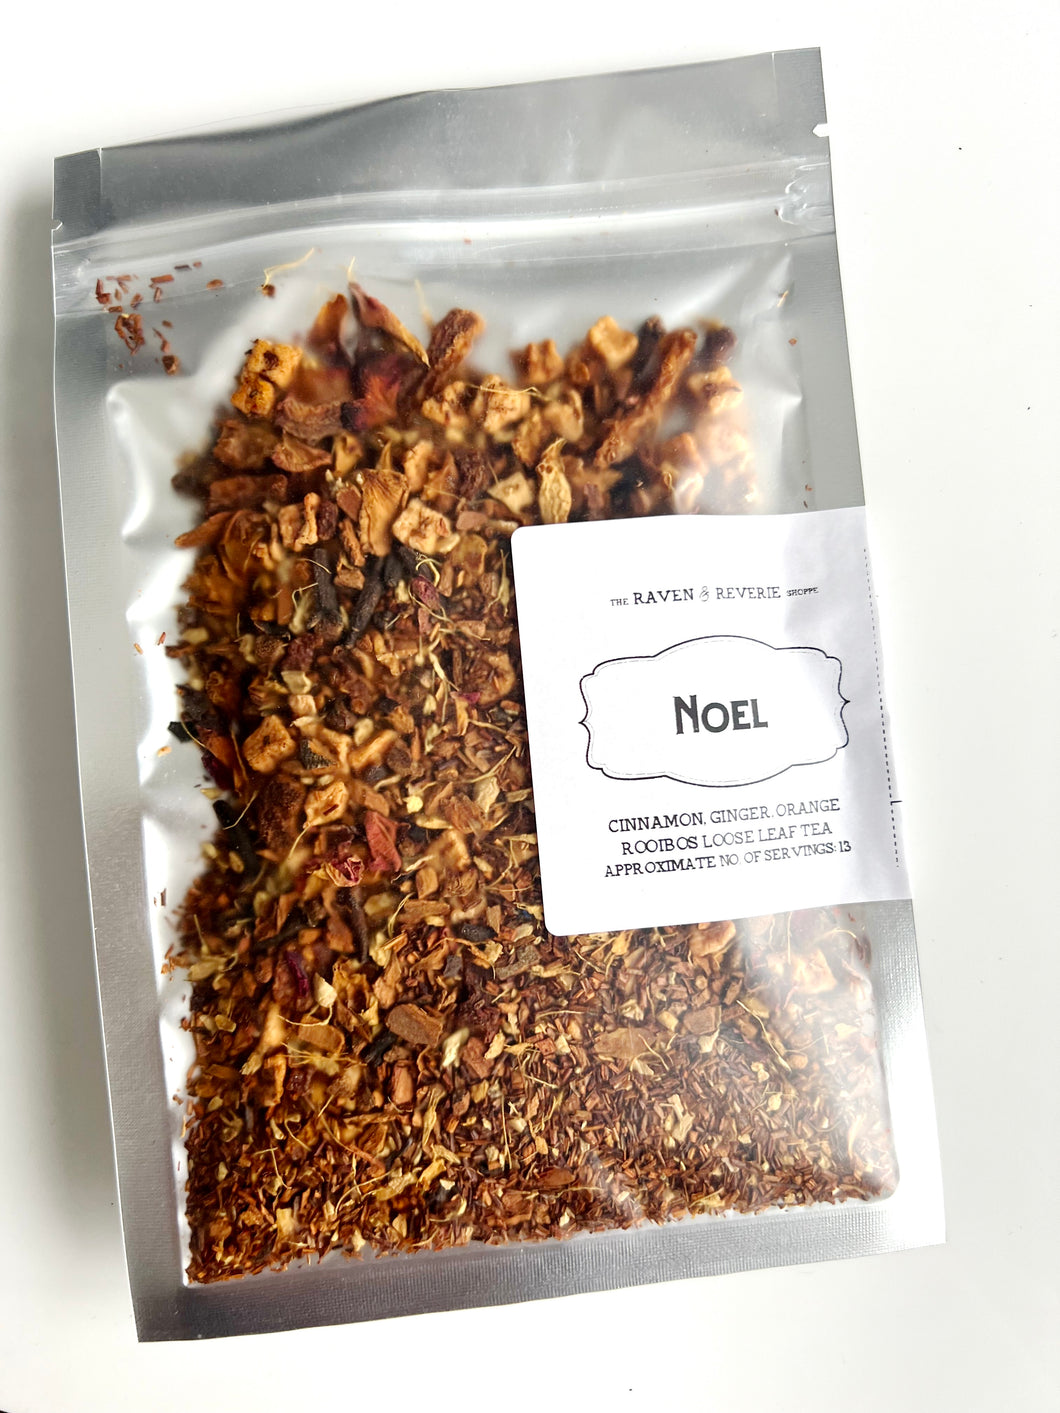 Noel - cinnamon, ginger, orange rooibos loose leaf tea